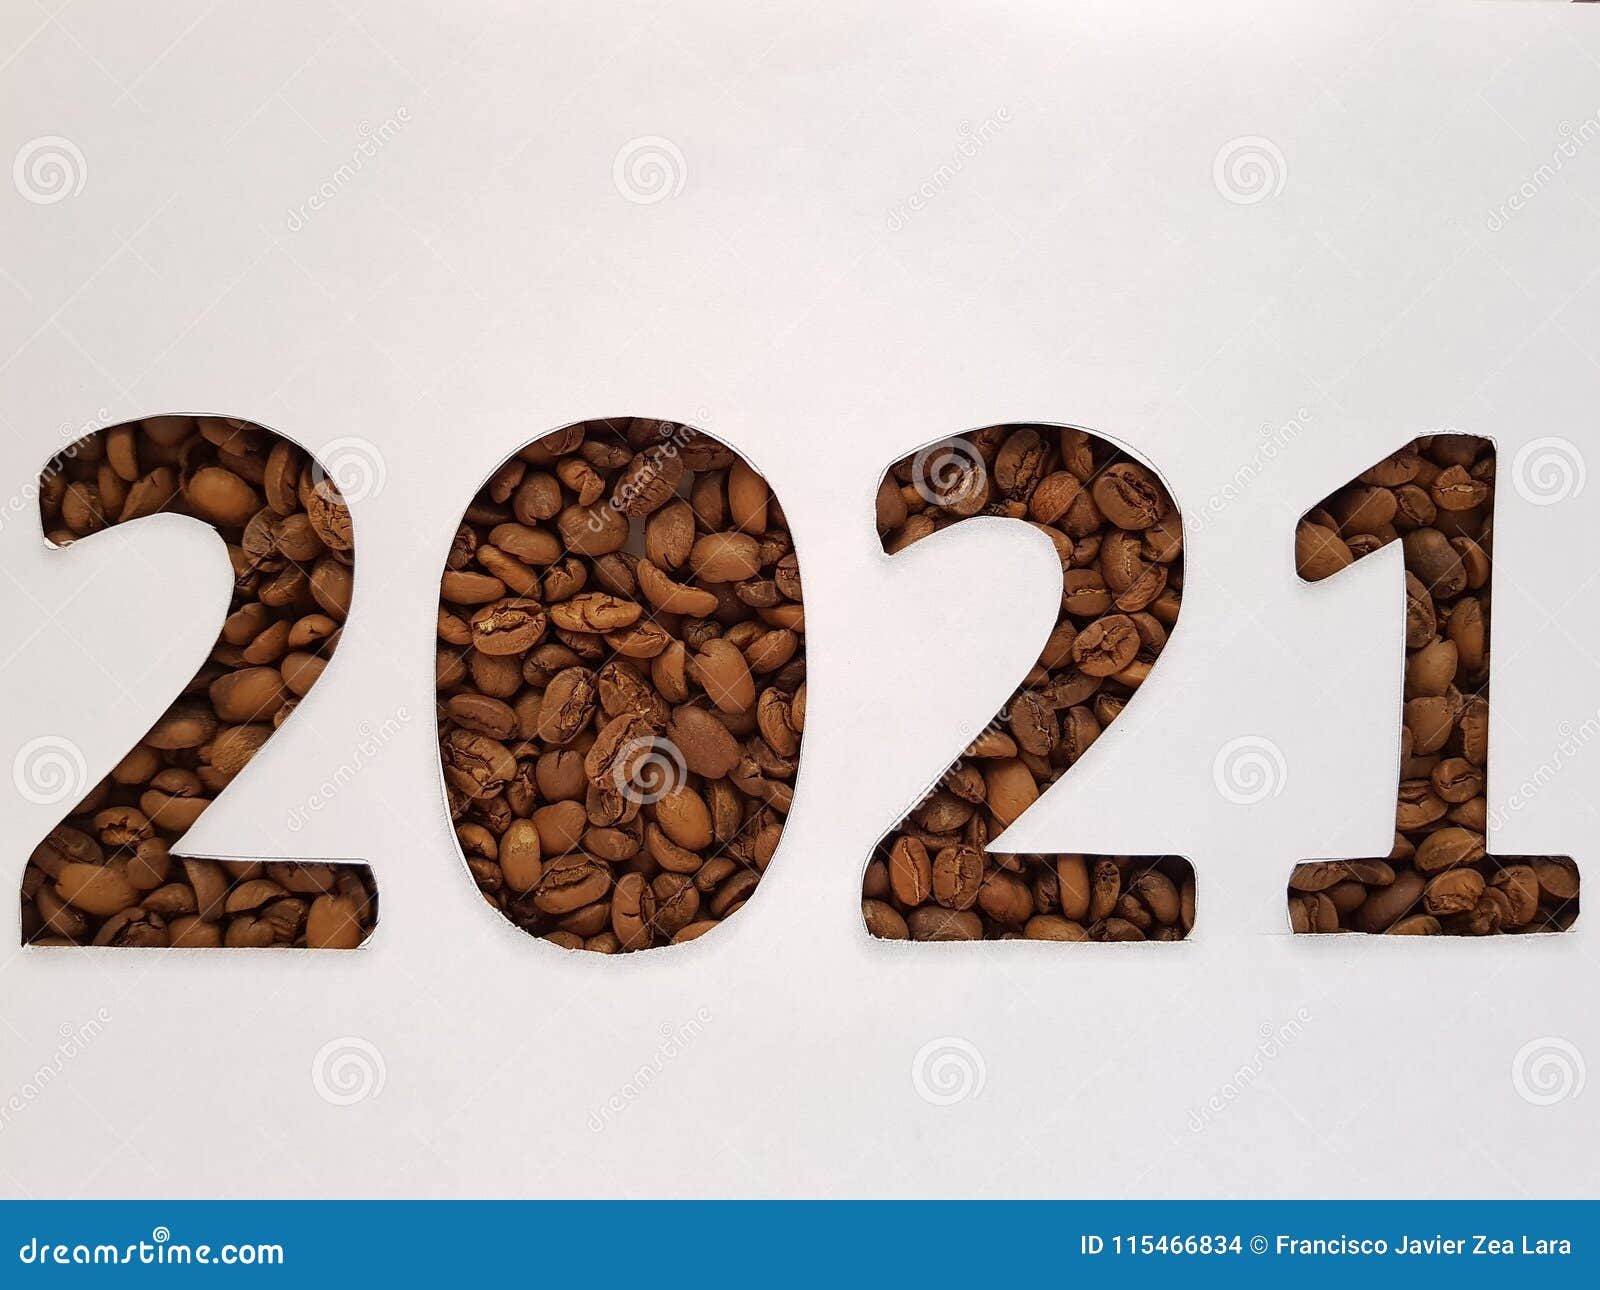 2021 Beans